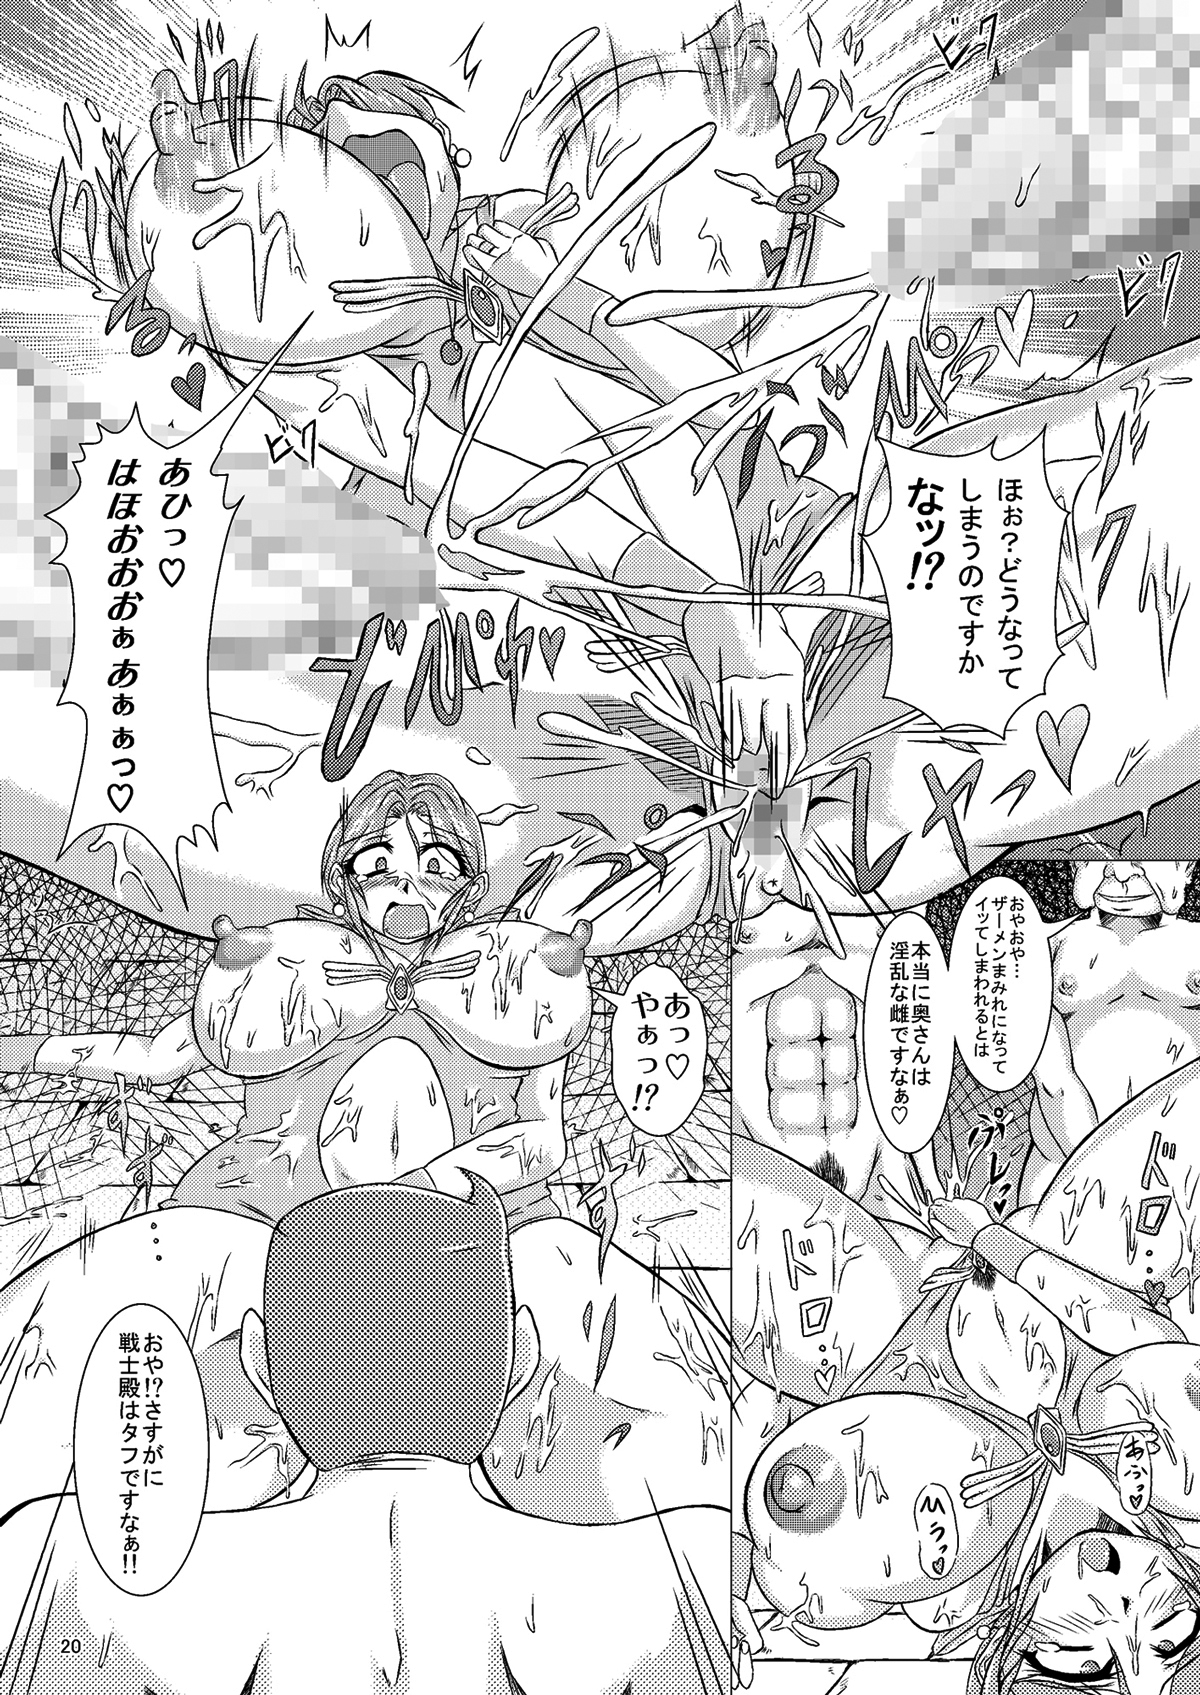 (CT14) [Pintsize (Yakusho)] Torneko-fujin Nene (35)  Danna wa Shiranai Yoru no Hustle Eigyou (Dragon Quest IV) page 20 full